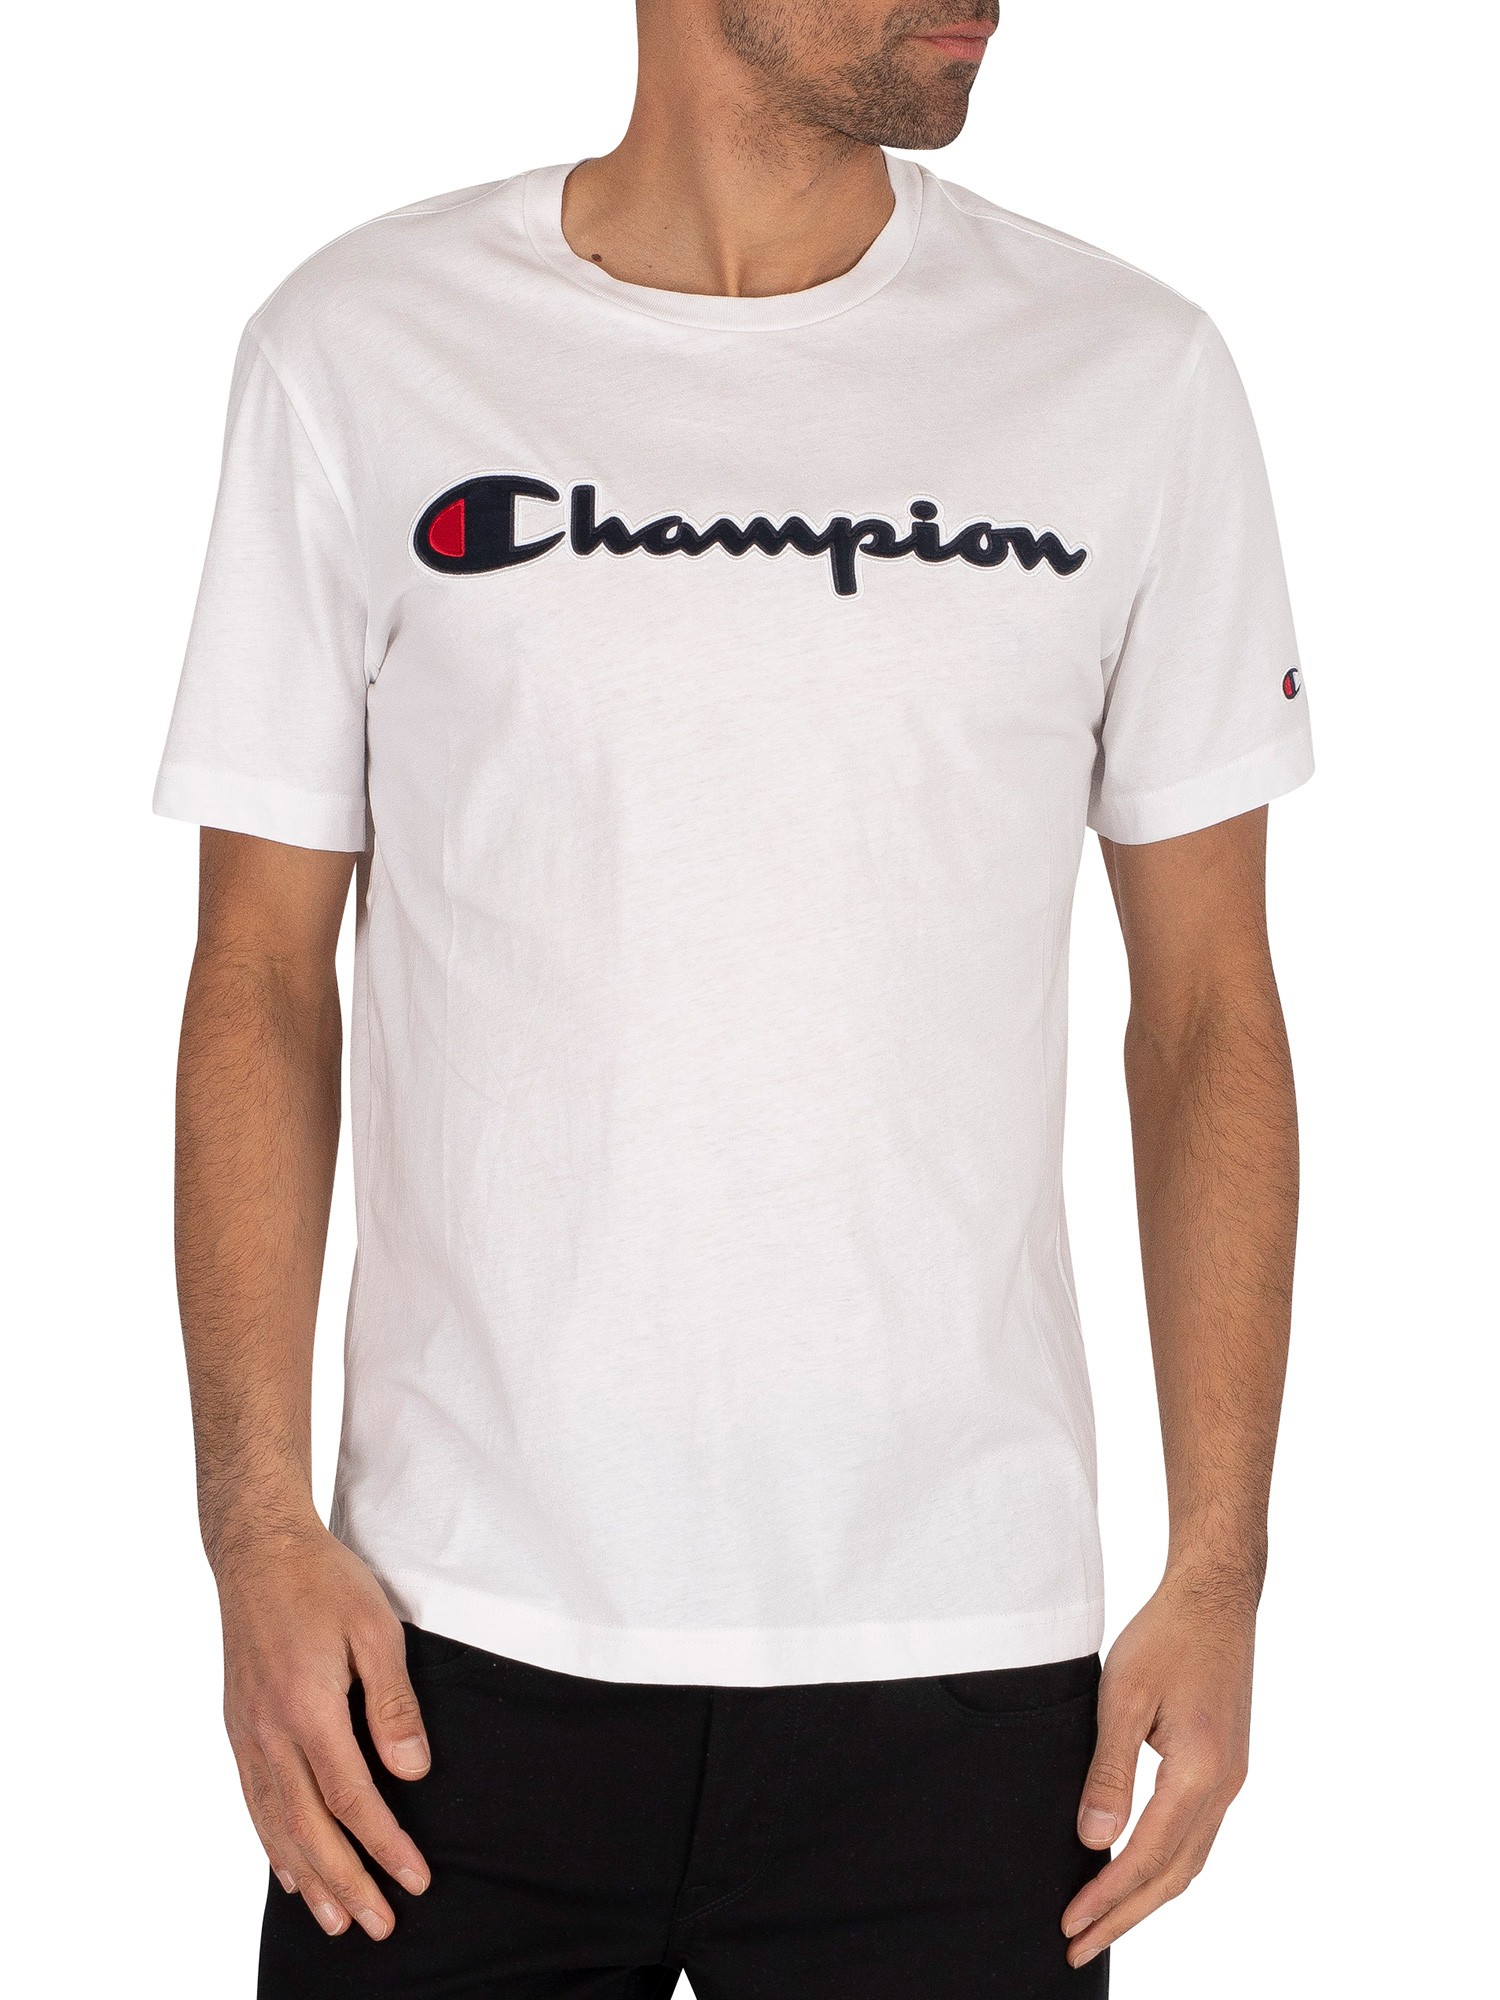 champion white t shirt